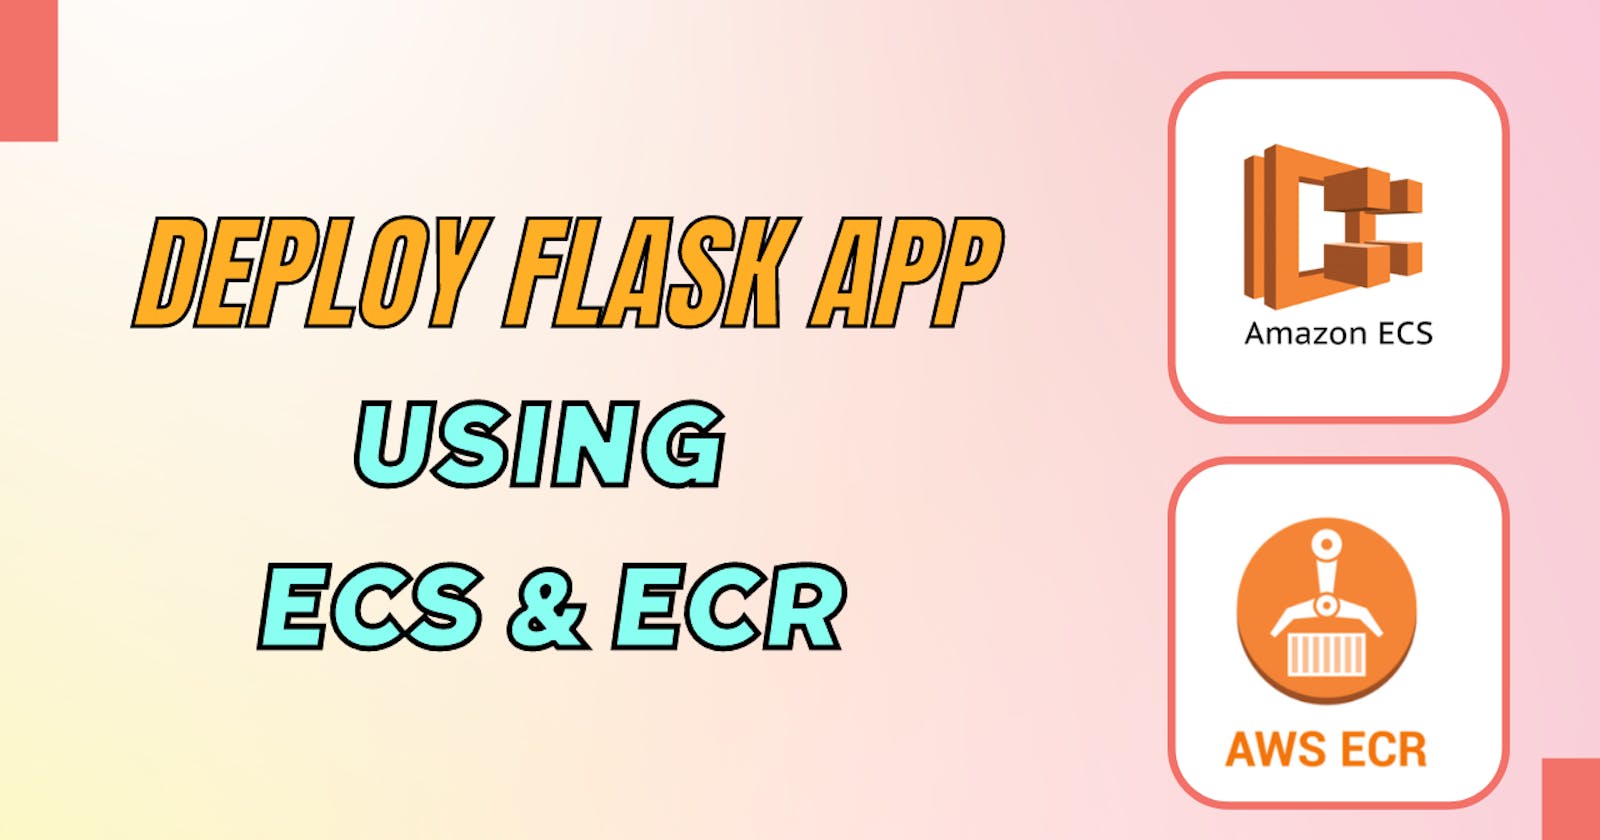 Deploy Flask App using ECS & ECR